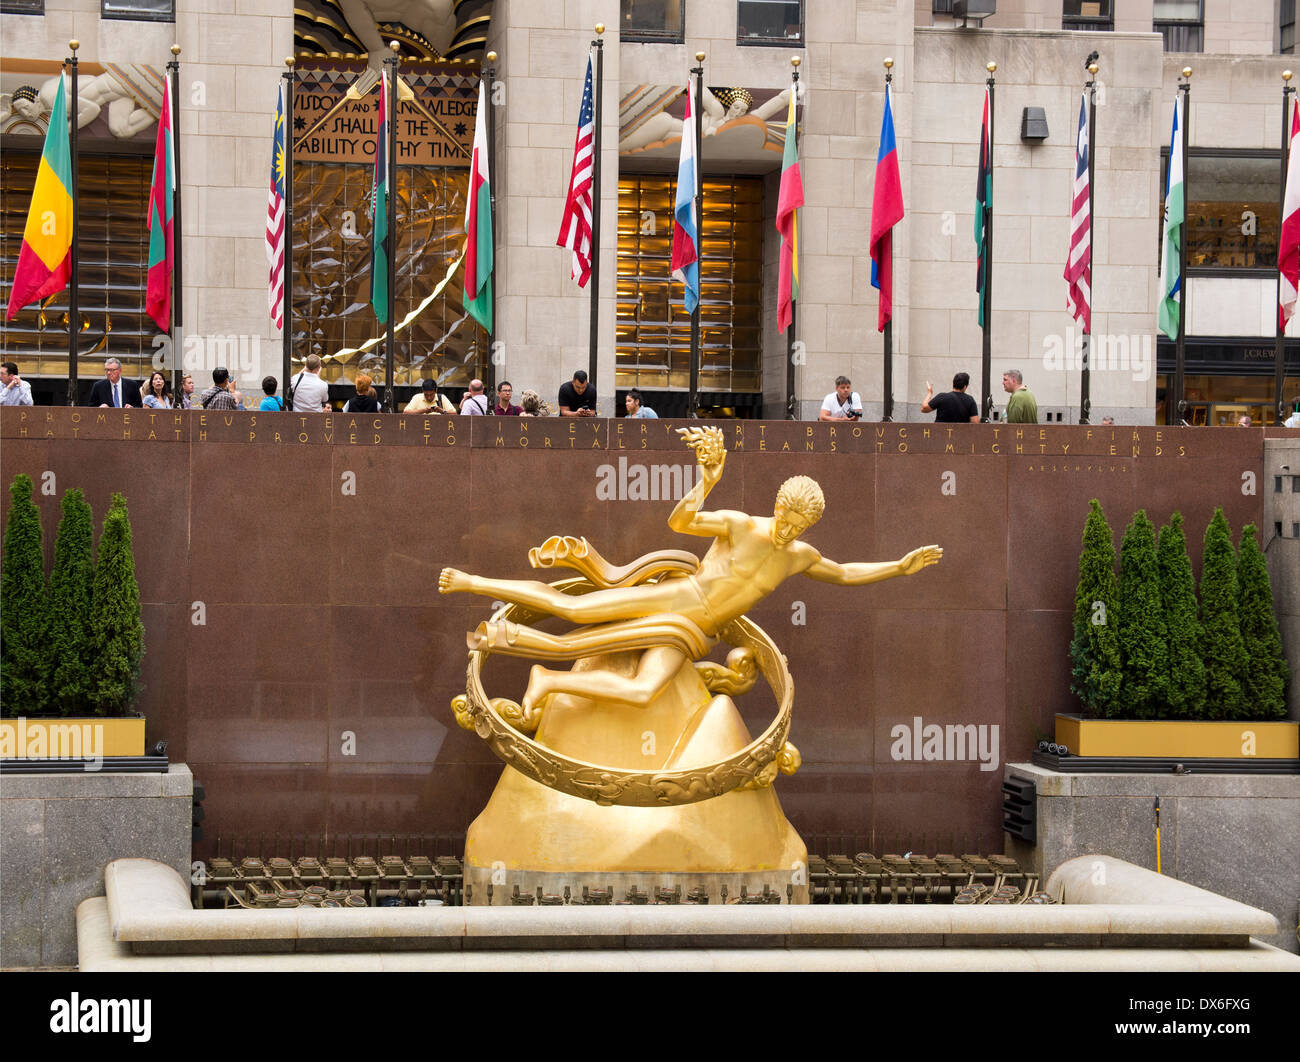 Statua dorata al di sopra della pista di pattinaggio al Rockefeller Center di New York STATI UNITI D'AMERICA Foto Stock